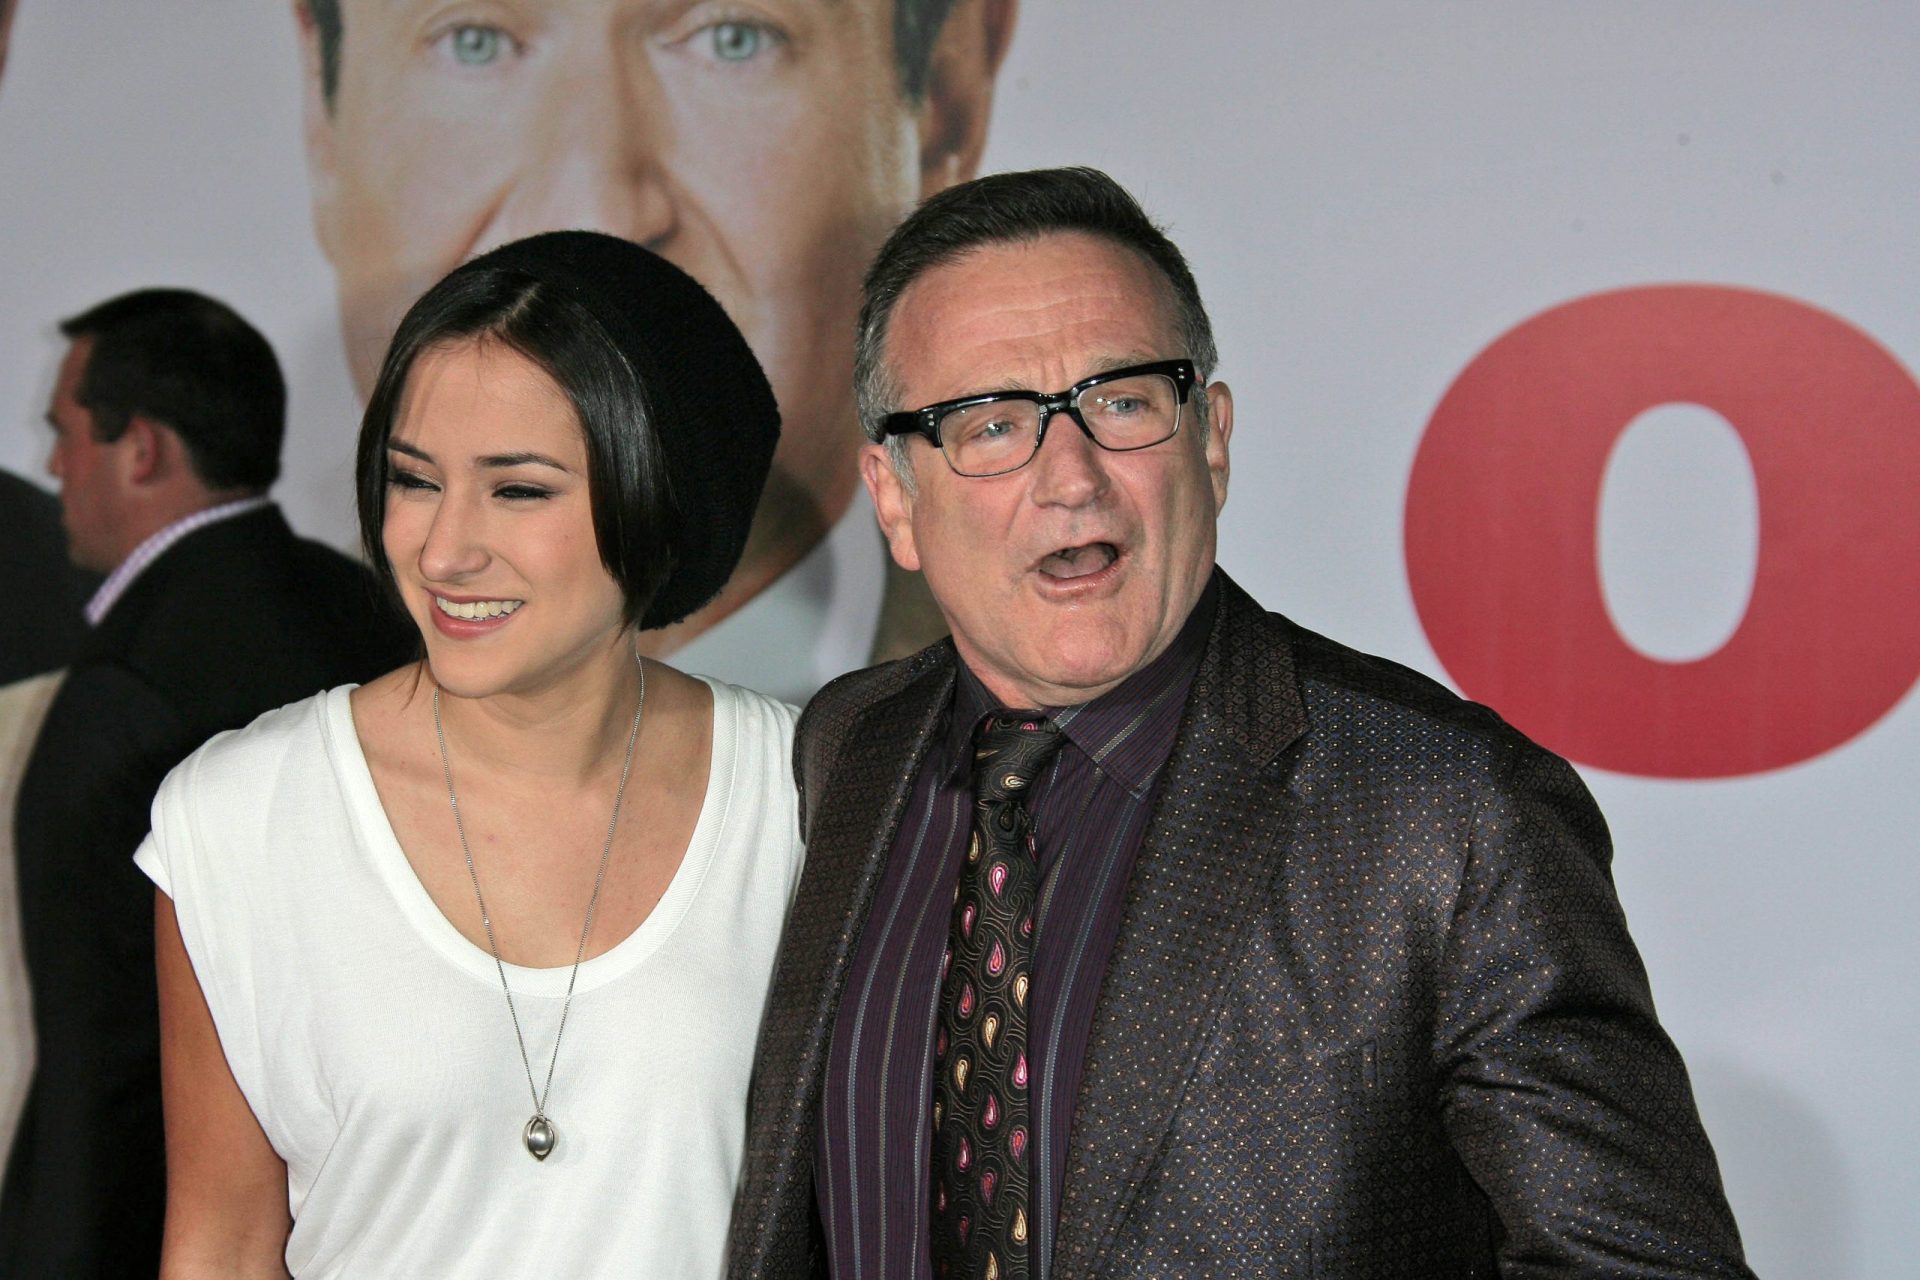 Perseguida, a filha de Robin Williams deixa as redes sociais